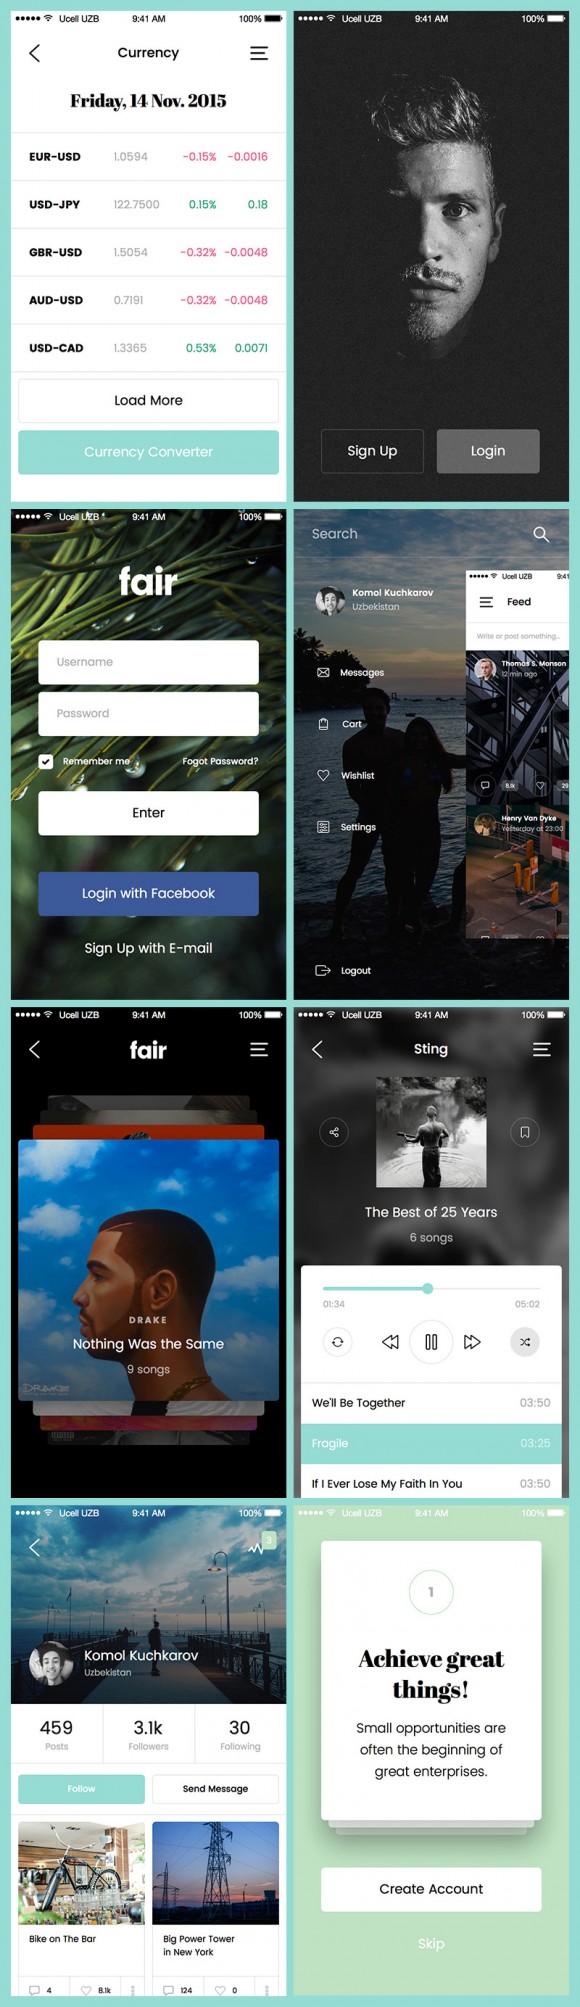 Fair Mobile UI Kit: Full preview